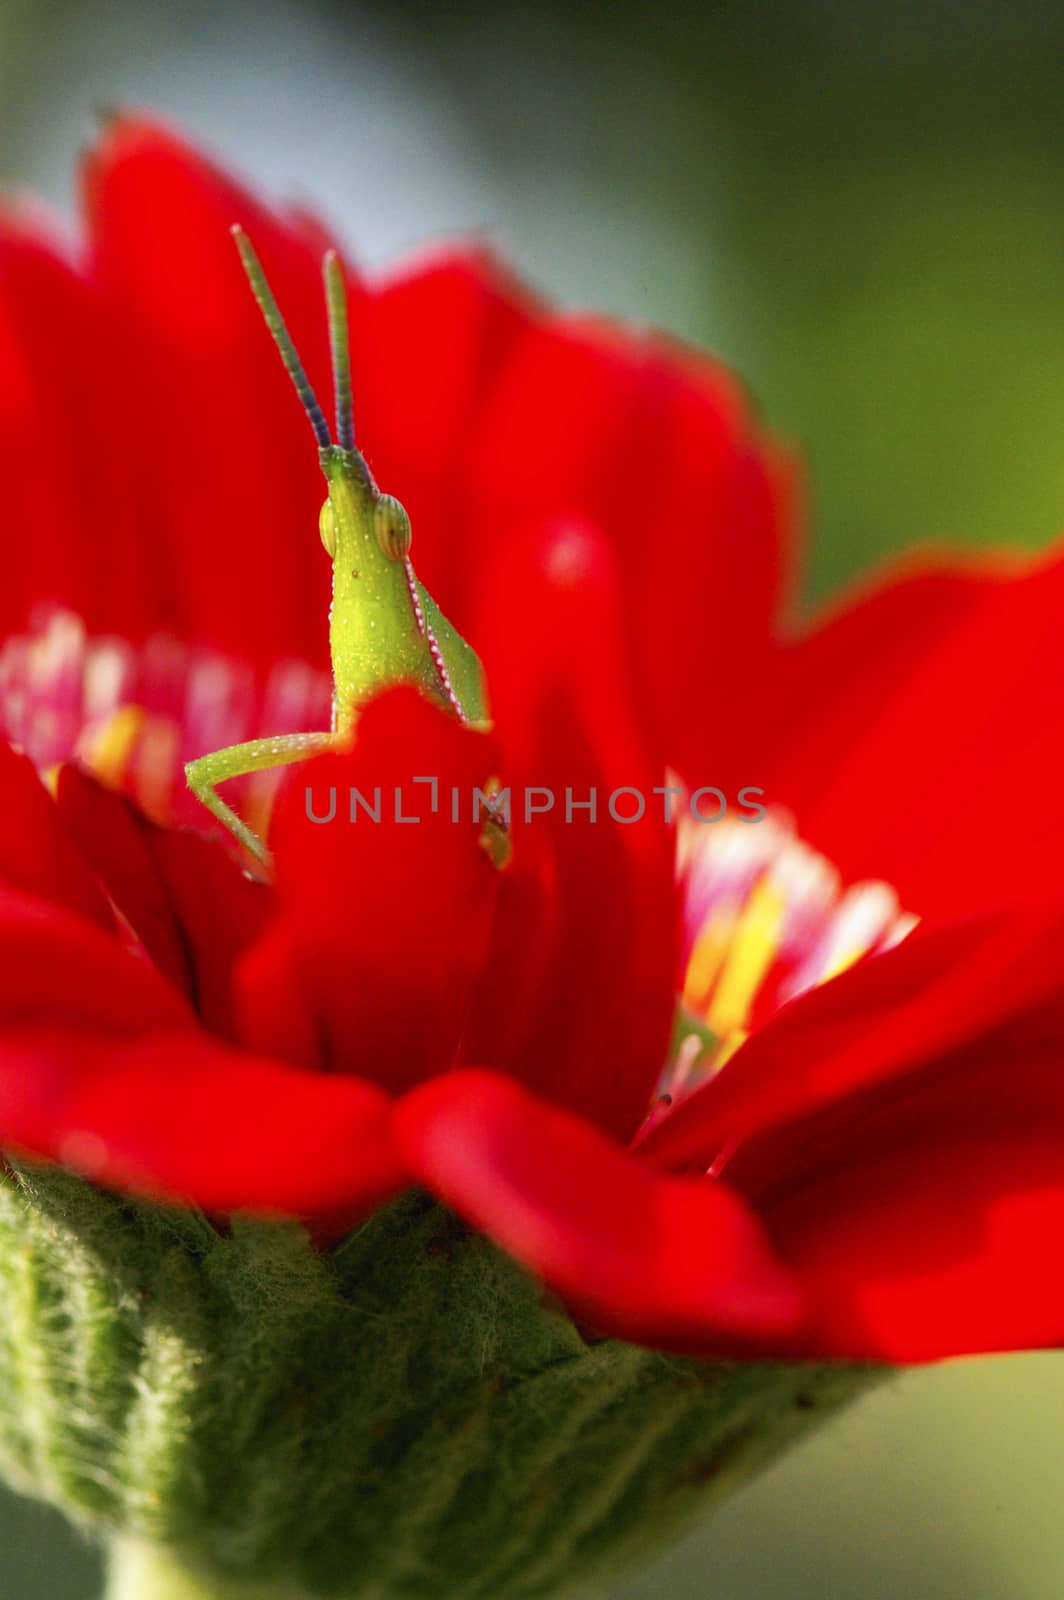 Long horned grasshopper or cricket on red flower